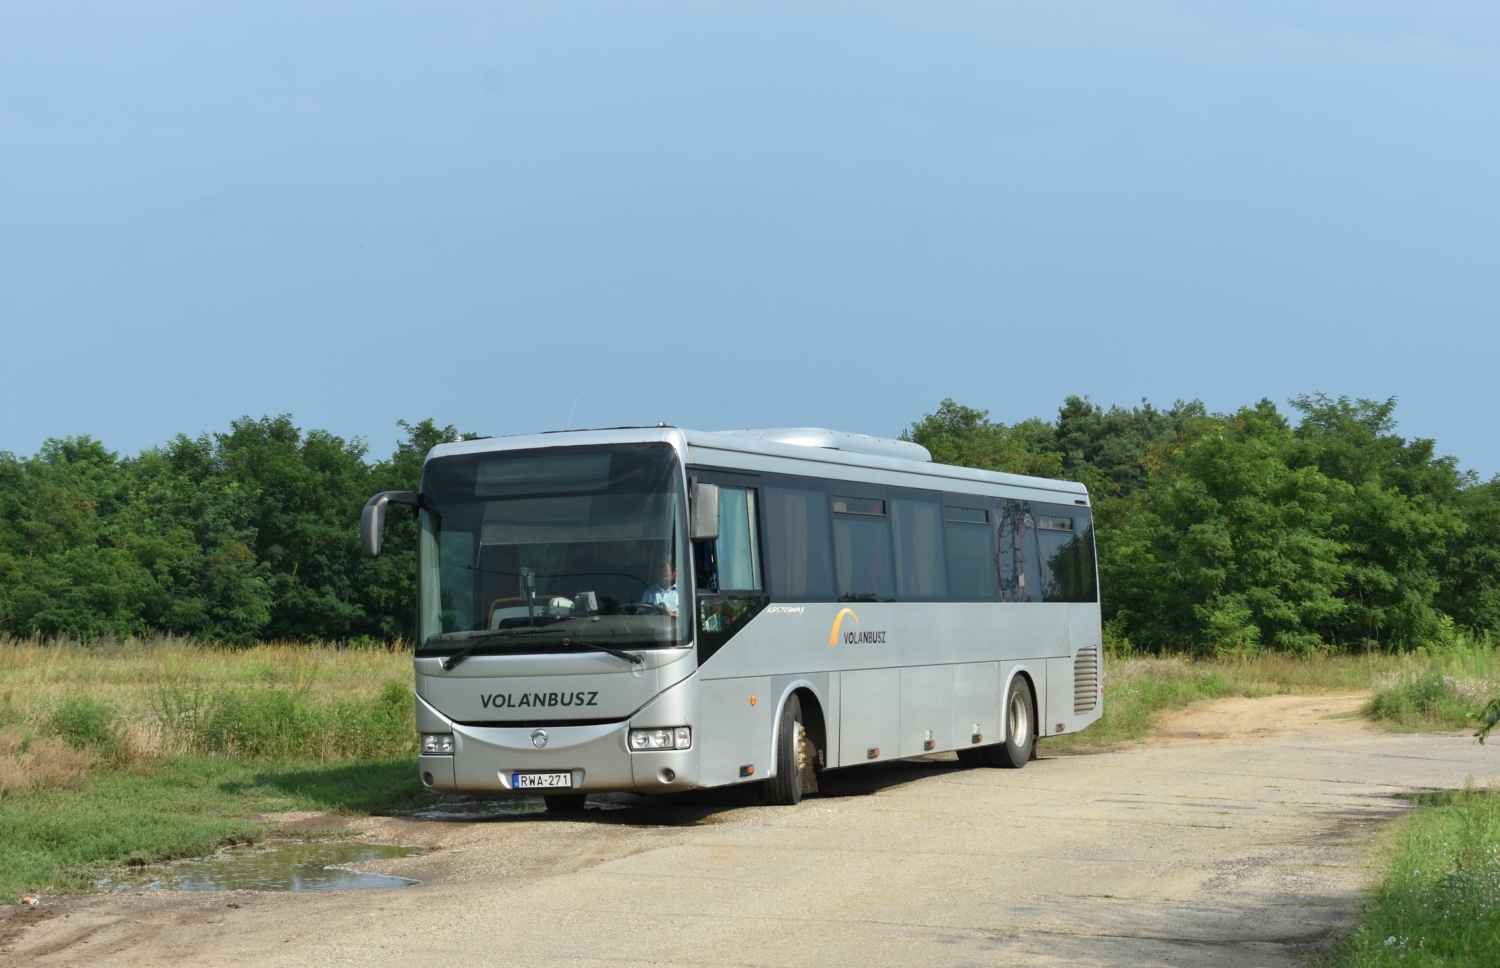 Ve službách Volánbuszu bychom nalezli i vůz Irisbus Crossway výrobního čísla 1, který stál v roce 2006 na počátku úspěšné modelové řady. (foto: Libor Hinčica)